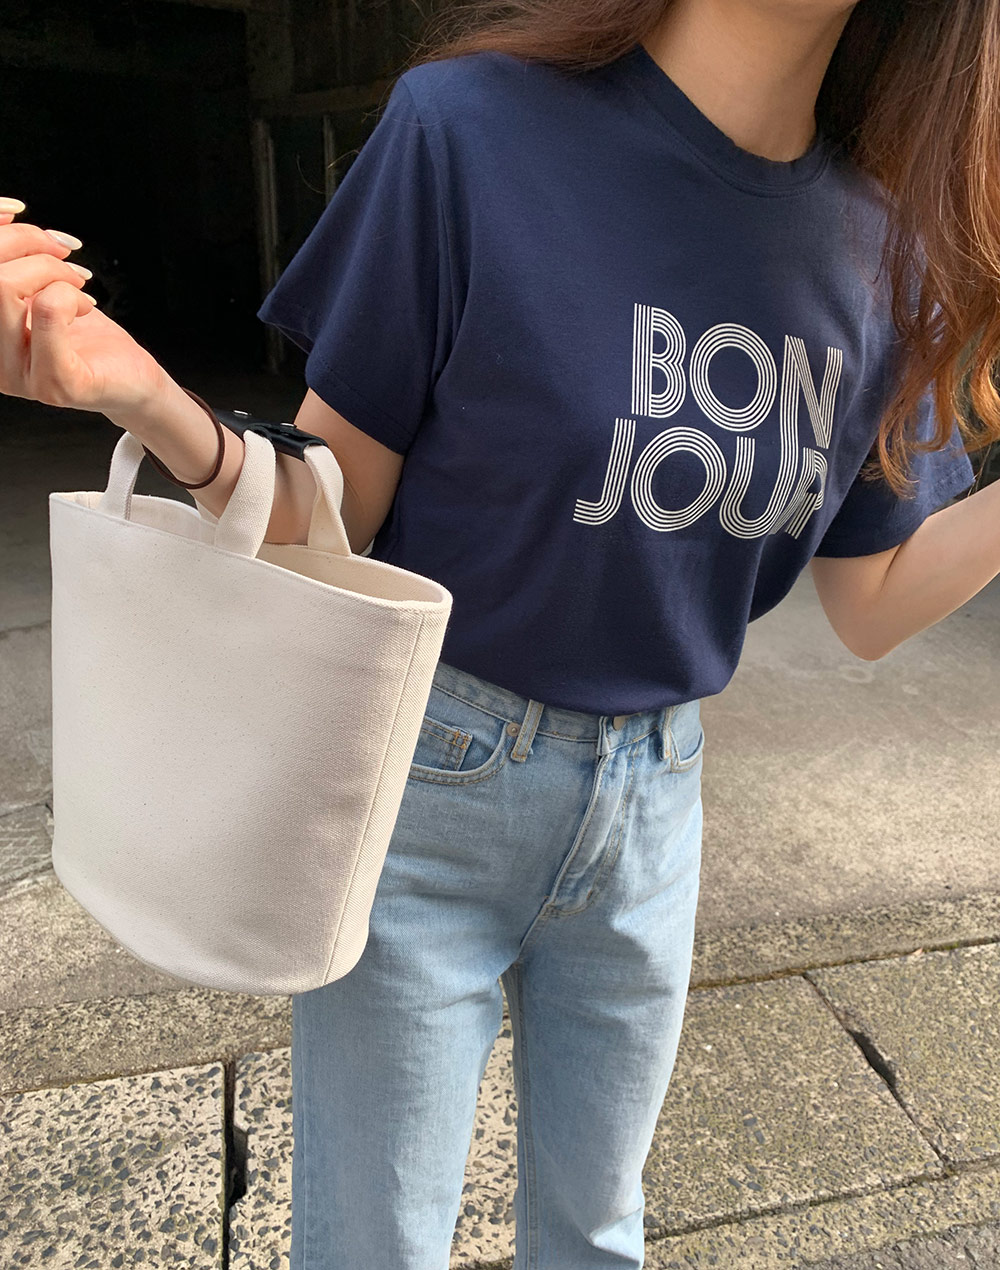 bonjour T-shrit・t279210（トップス/Tシャツ）| maikooe | 東京ガールズマーケット